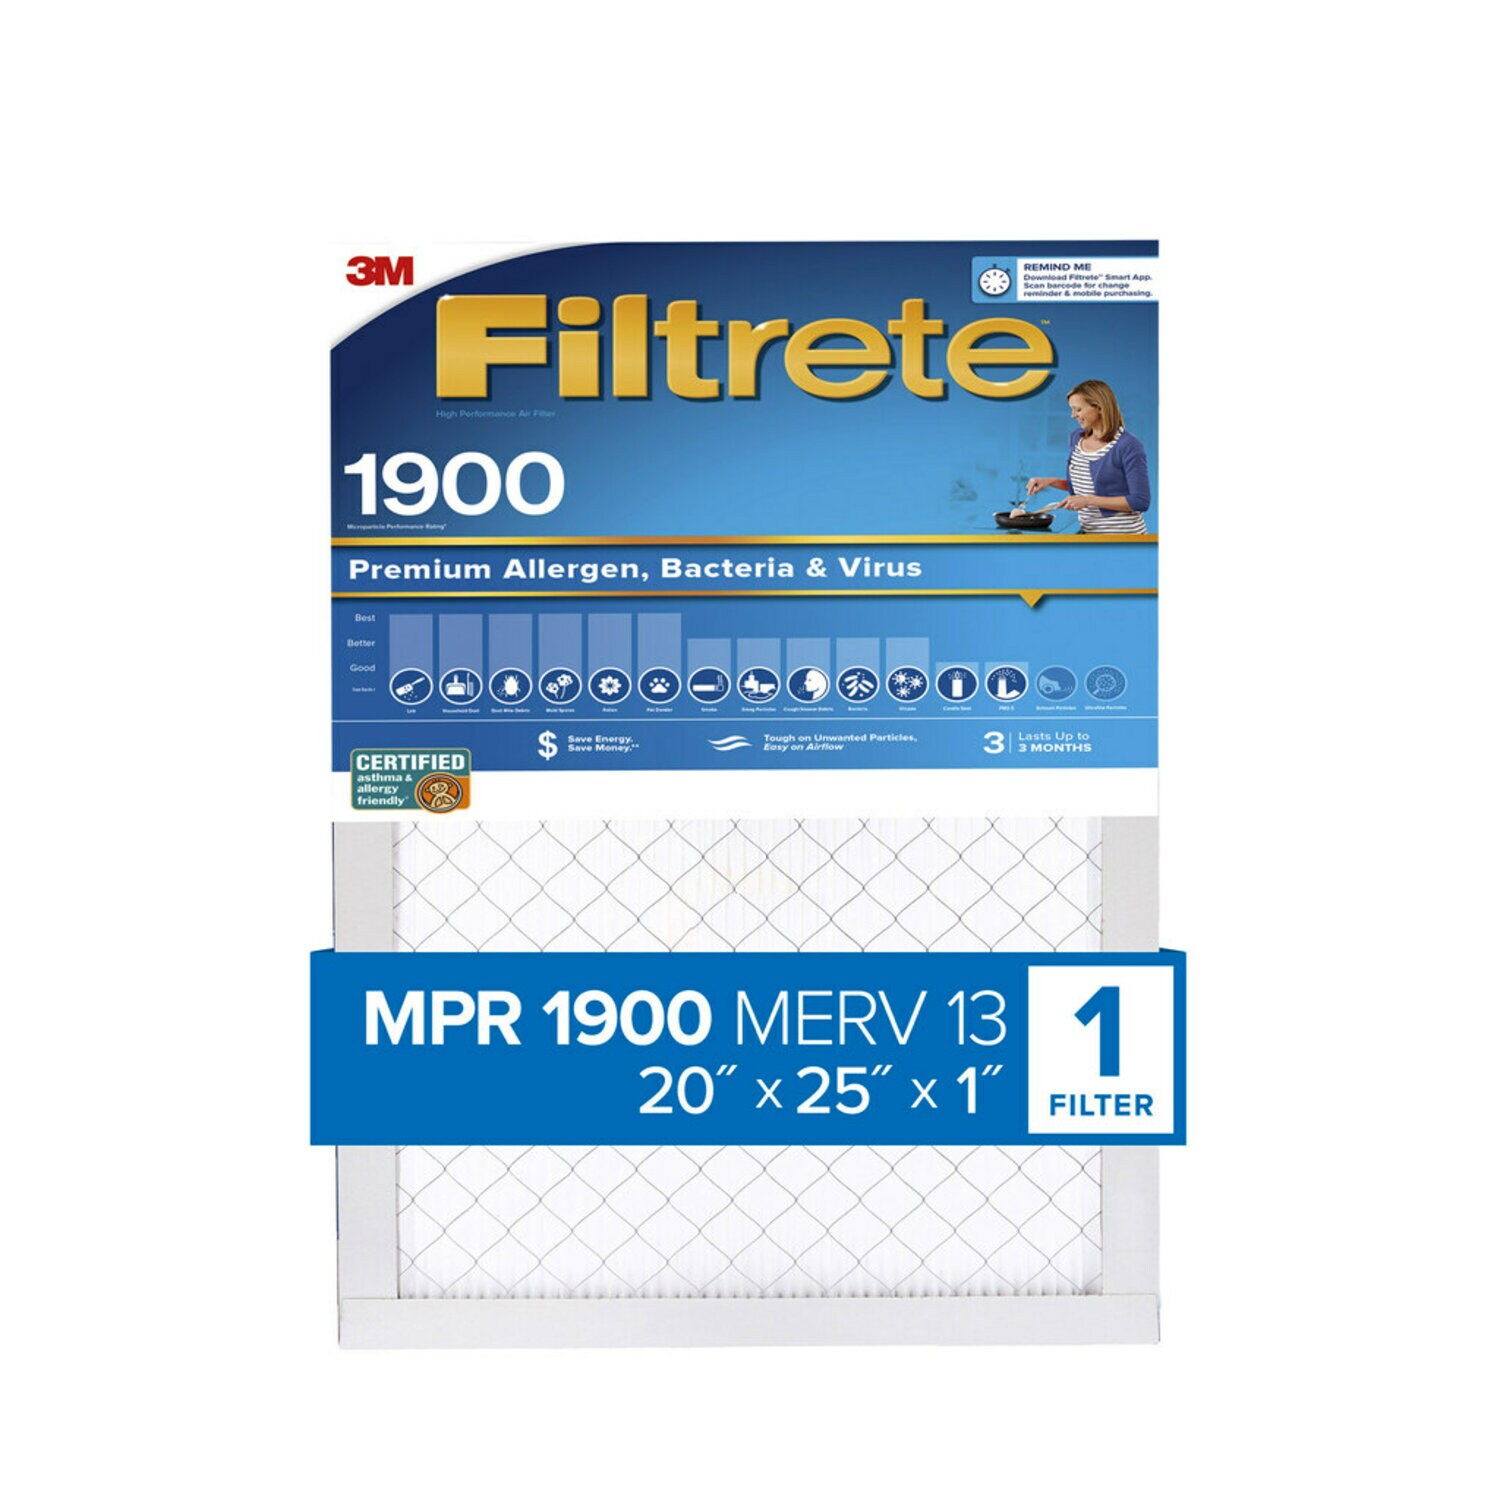 7100267956 - Filtrete High Performance Air Filter 1900 MPR UA03-4, 20 in x 25 in x 1 in (50.8 cm x 63.5 cm x 2.5 cm)